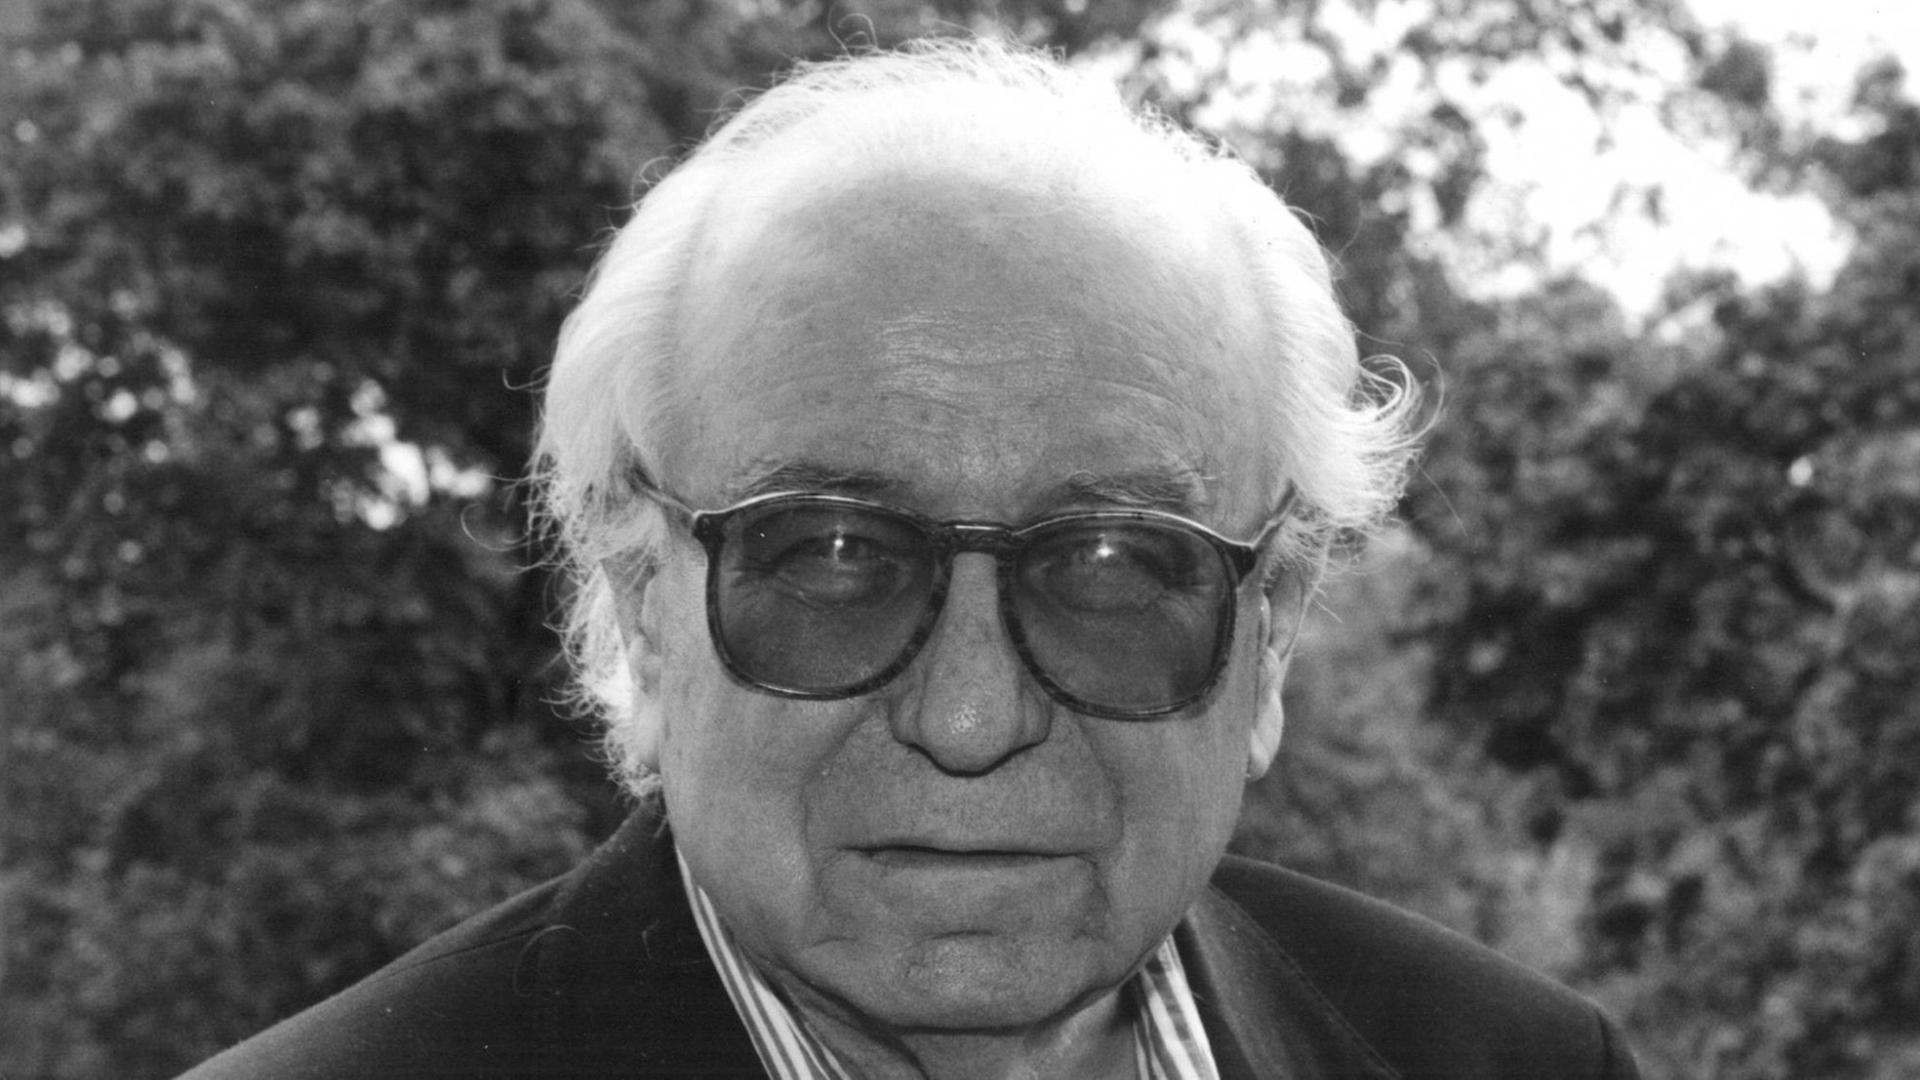 Ein schwarzweißes Porträtfoto von 1991 zeigt den Schriftsteller Wolfgang Koeppen mit großer, rechteckiger Sonnenbrille